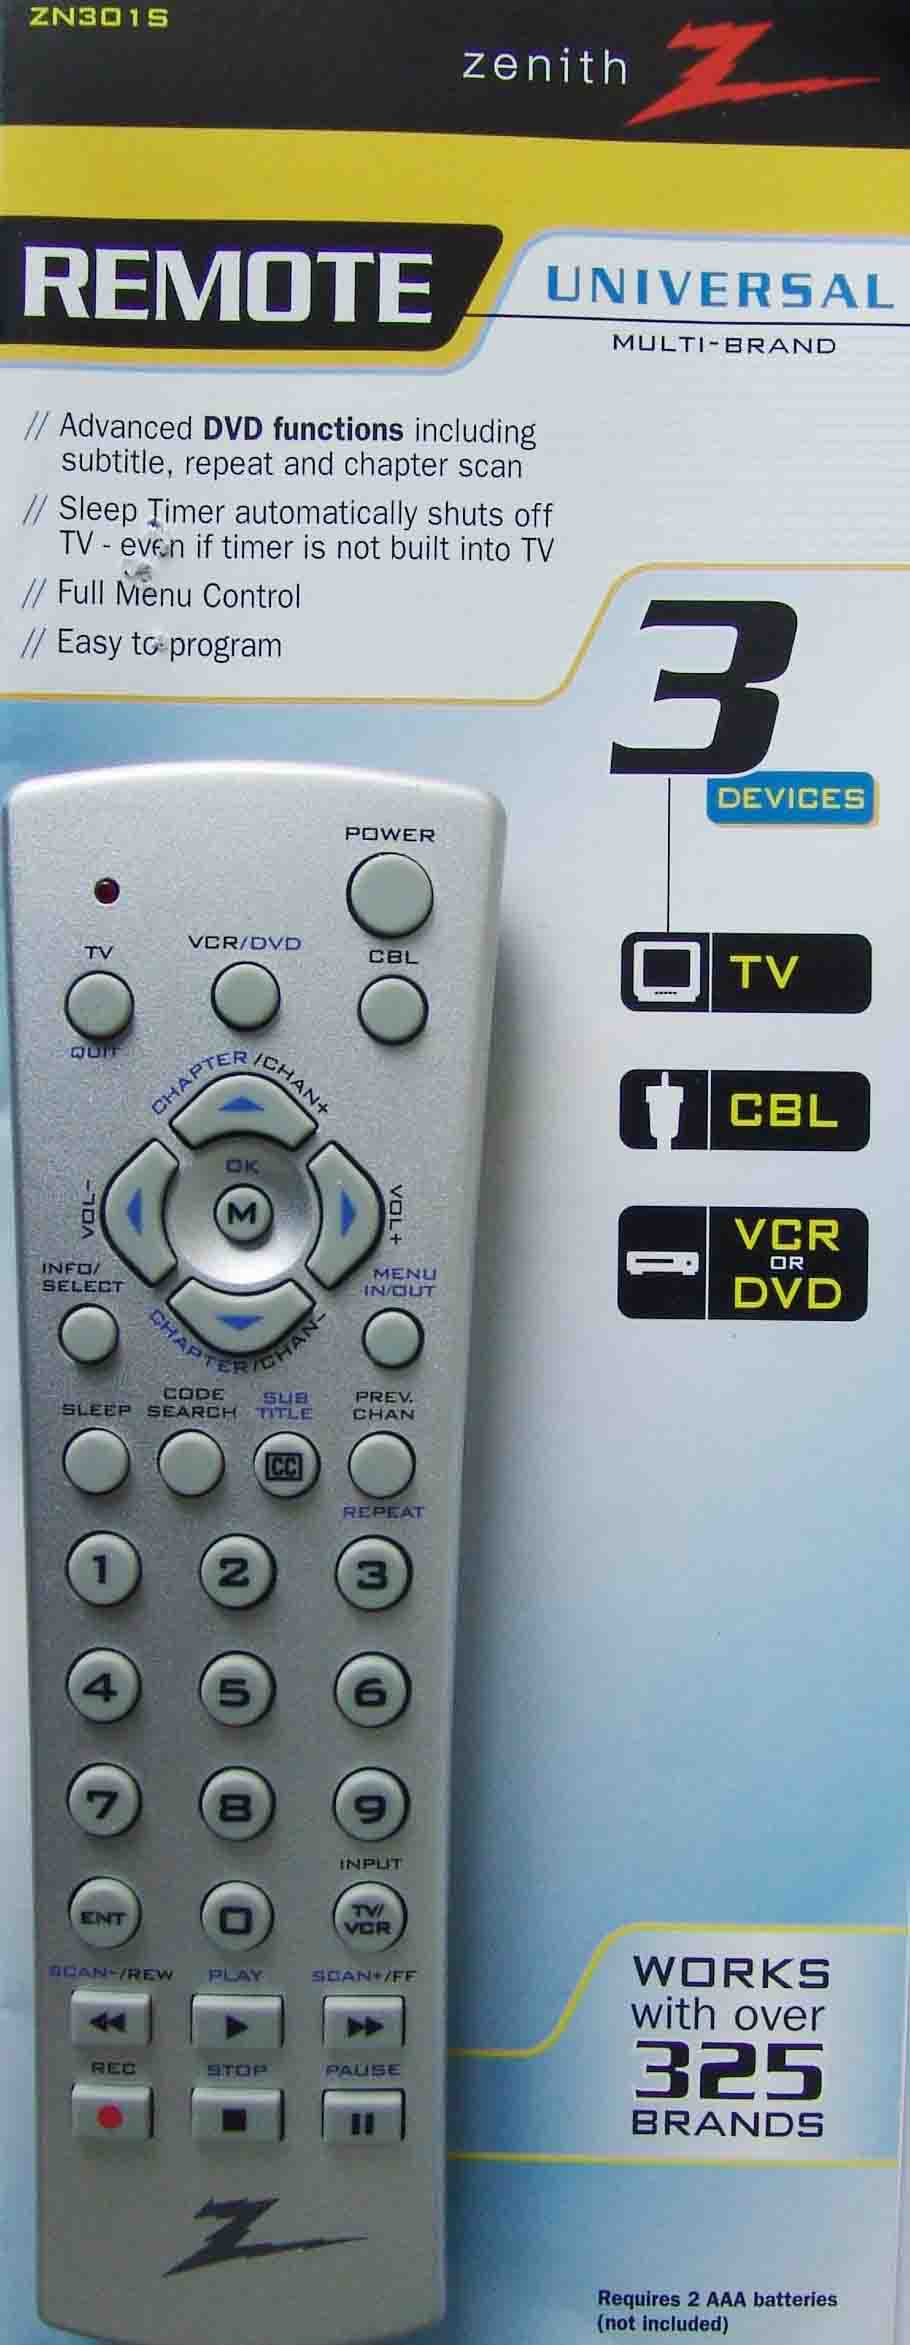 Remote Control (Remote Control)